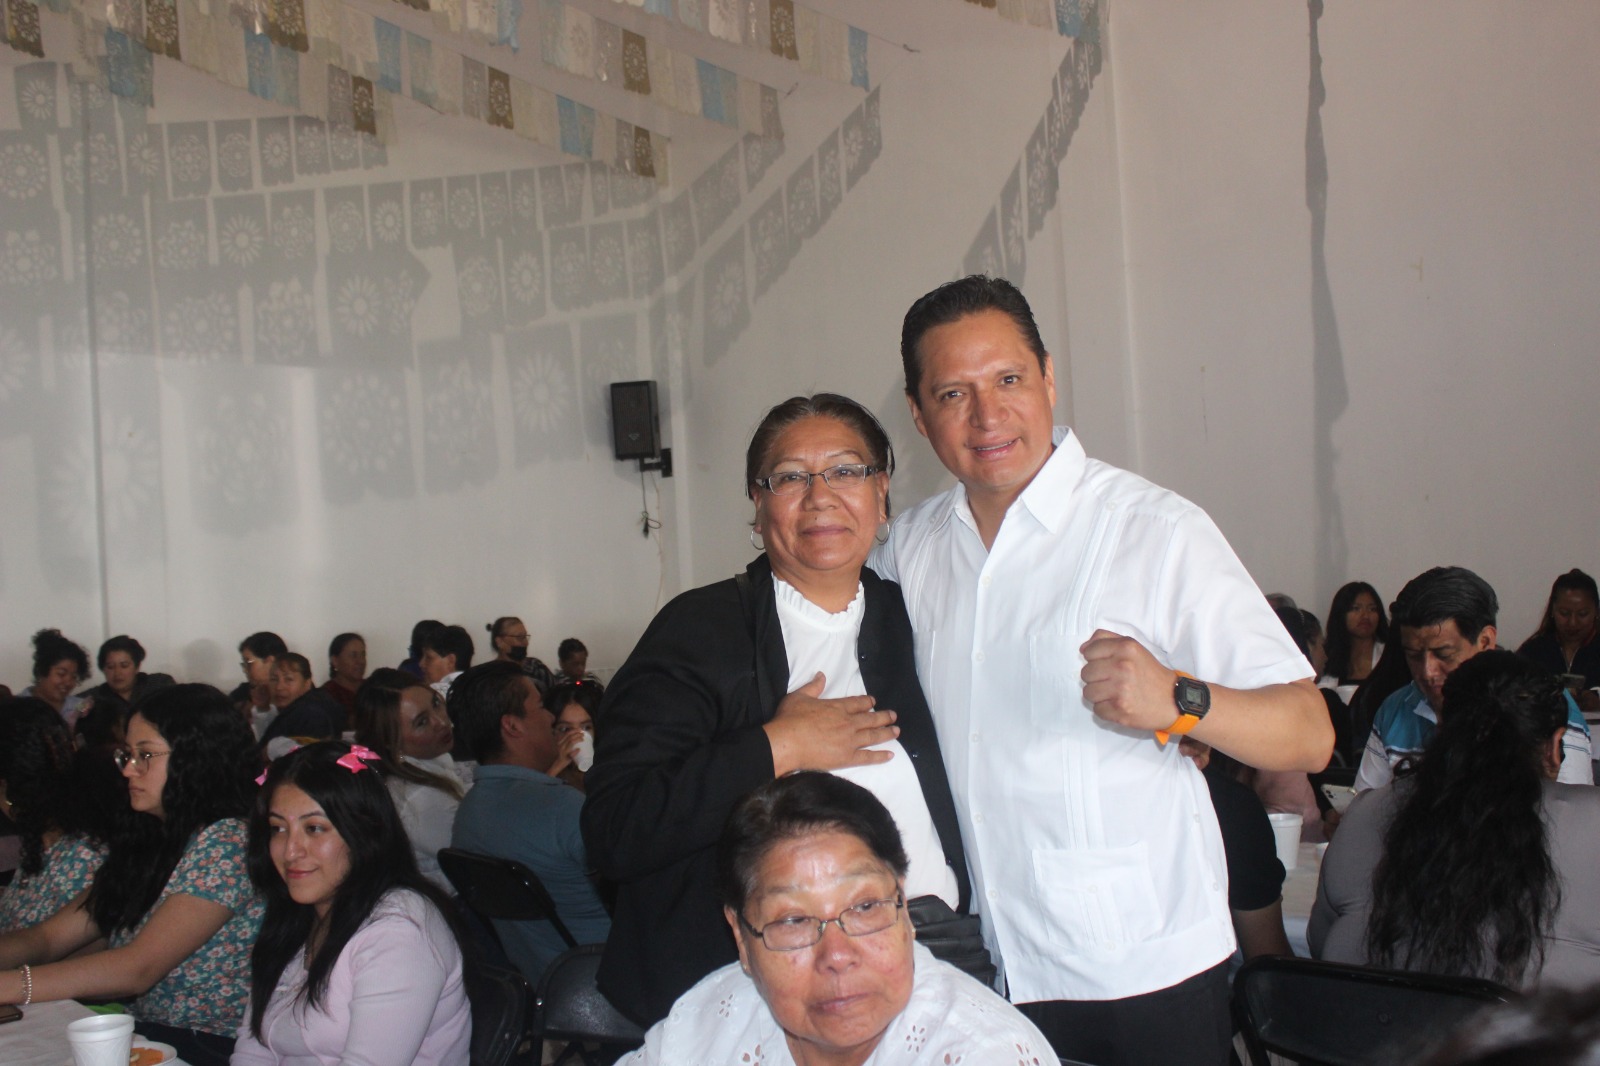 Recuperaremos la capital de Tlaxcala, afirma Luis Antonio Herrera al recibir apoyo de mujeres